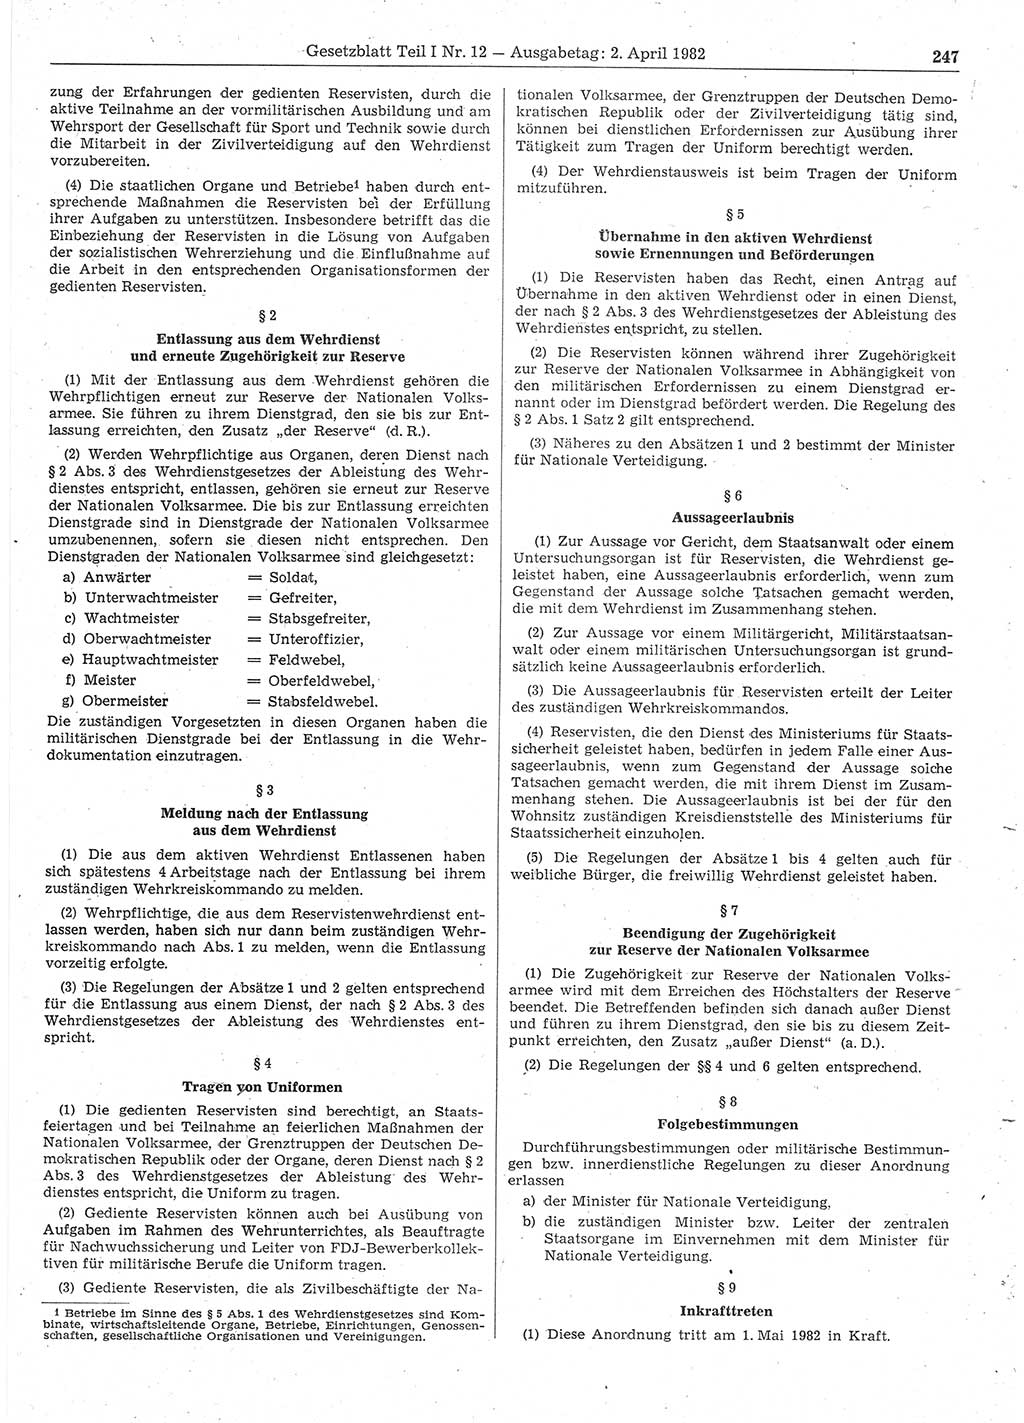 Gesetzblatt (GBl.) der Deutschen Demokratischen Republik (DDR) Teil Ⅰ 1982, Seite 247 (GBl. DDR Ⅰ 1982, S. 247)